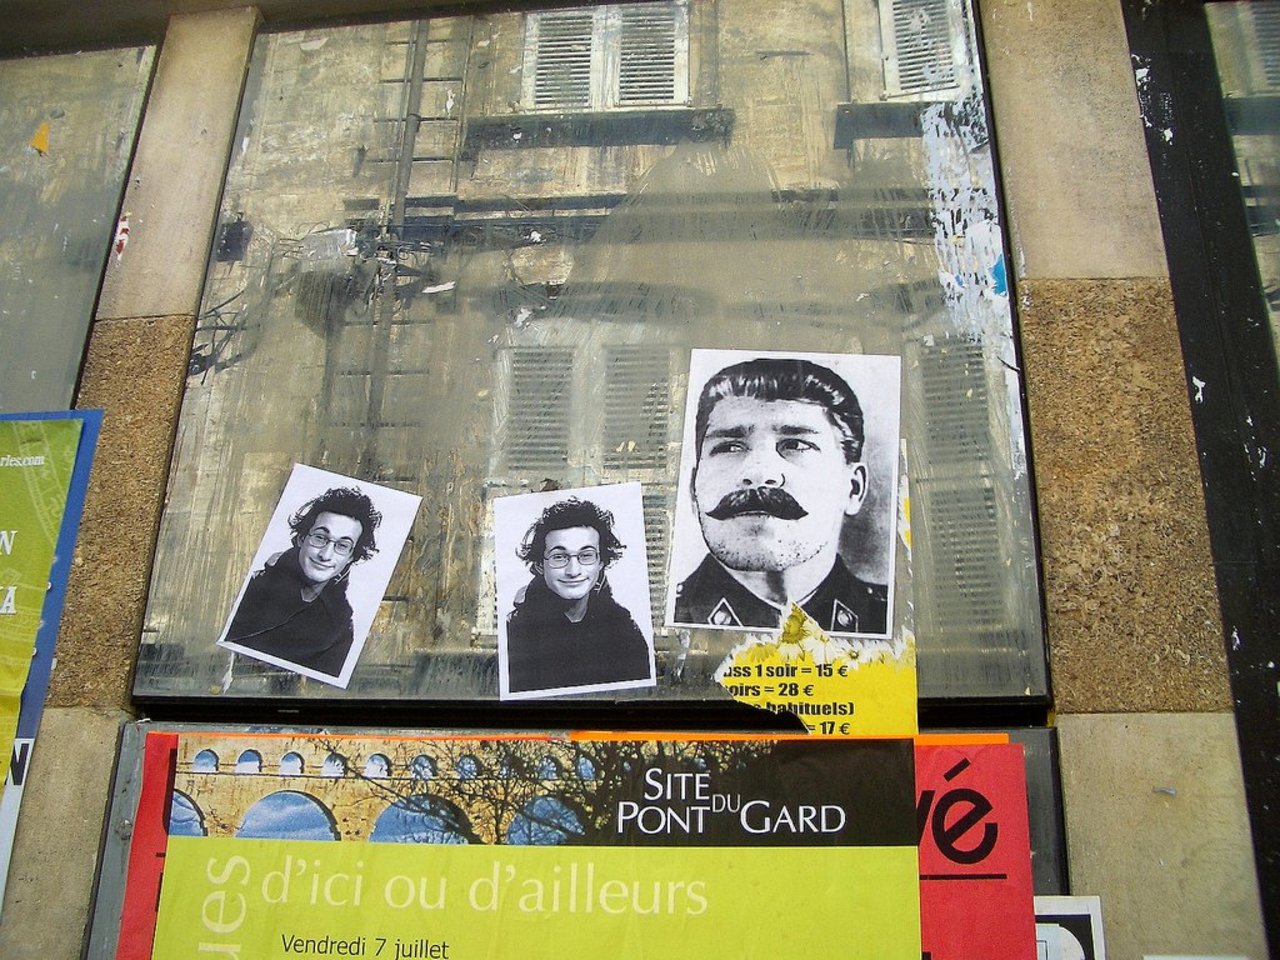 Street Art by Nojnoma in #Avignon http://www.urbacolors.com #art #mural #graffiti #streetart https://t.co/HlKS7NSW7w